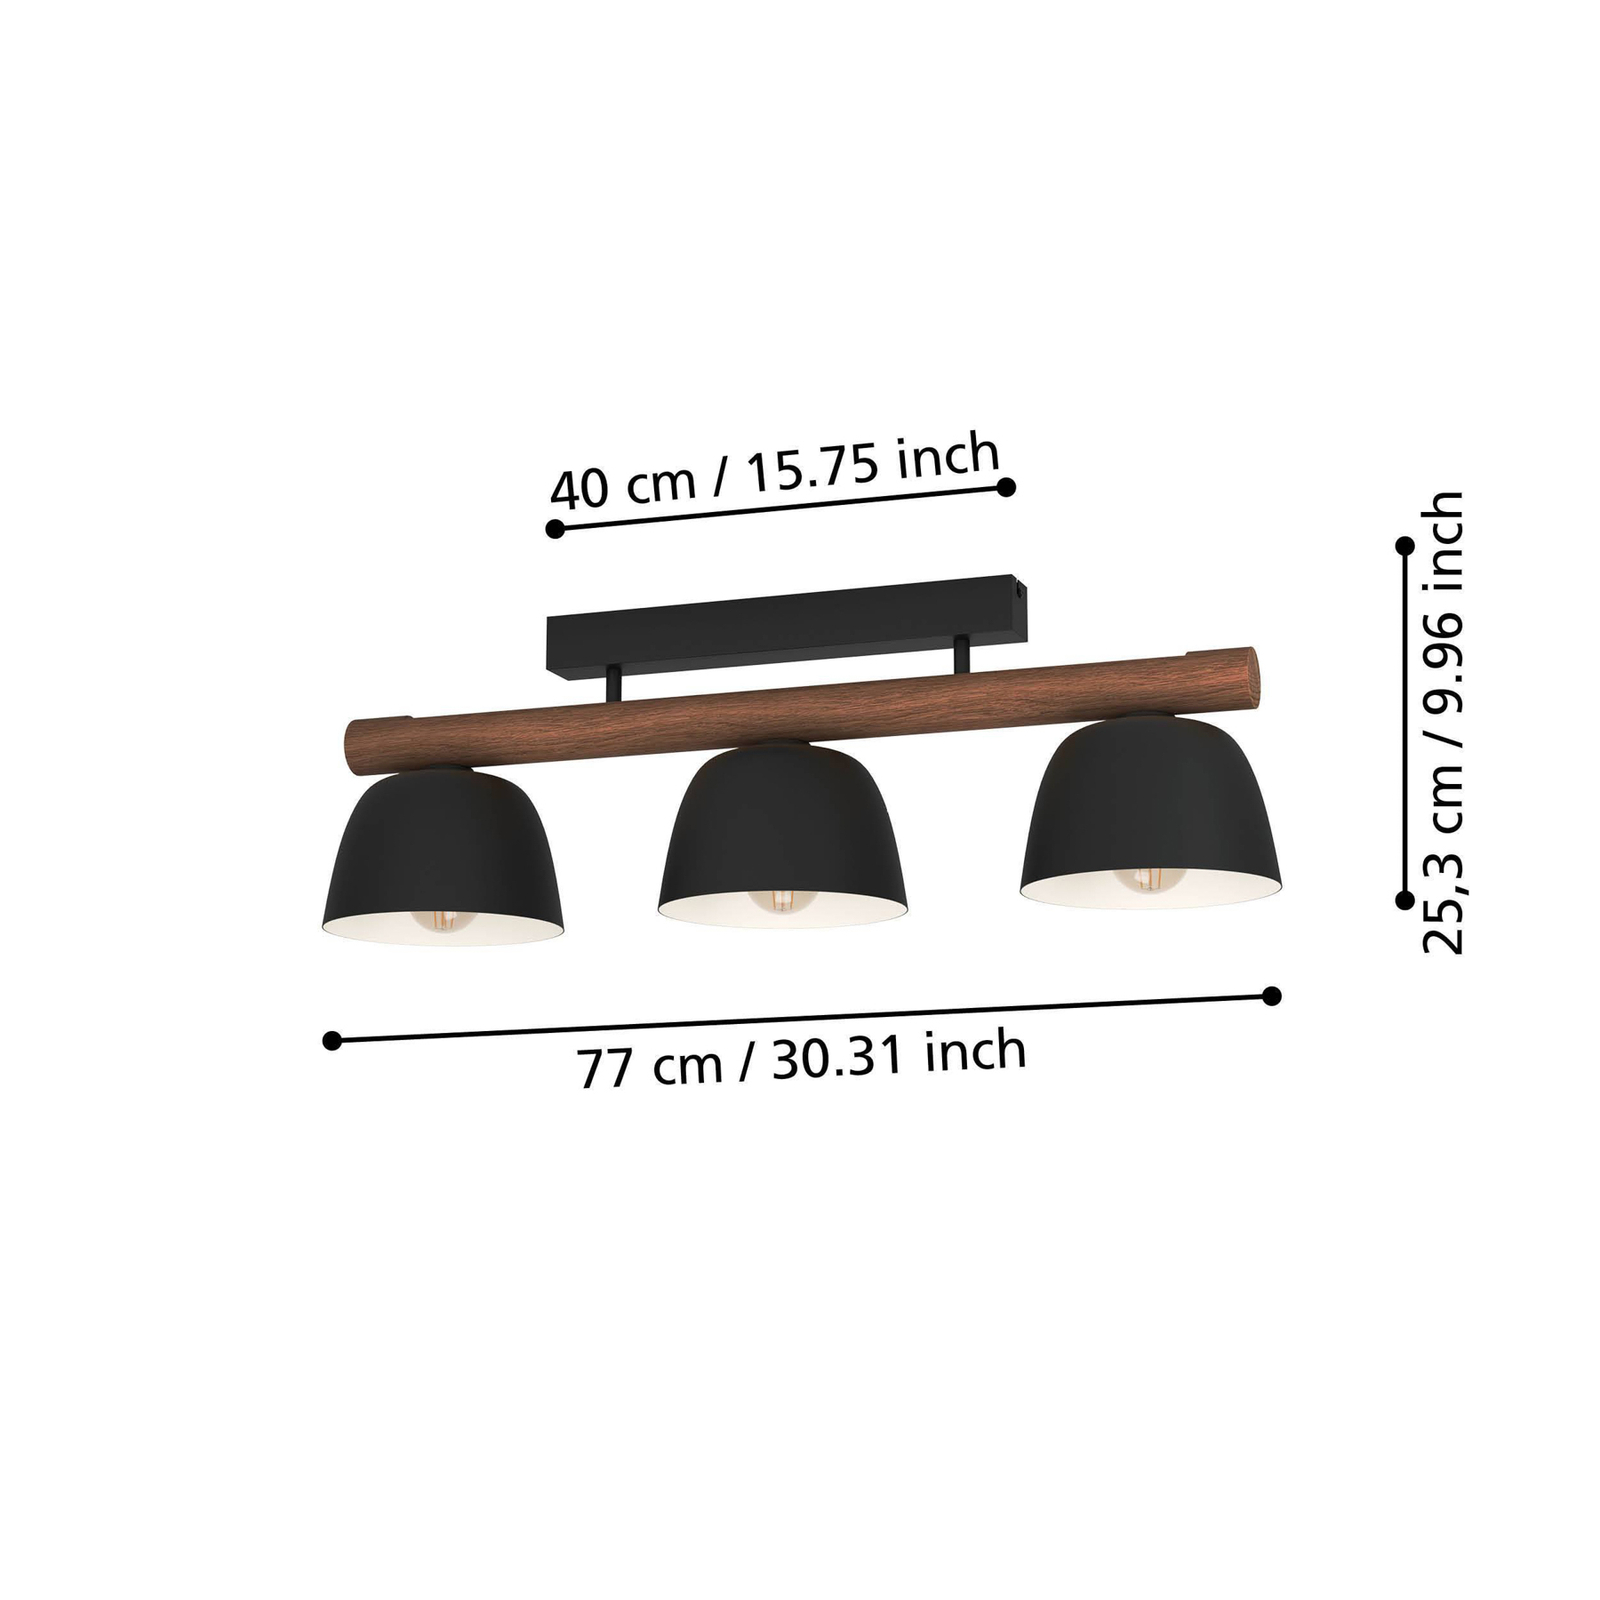 Stropné svietidlo Sherburn, dĺžka 80 cm, čierna/hnedá farba, 3 svetlá.